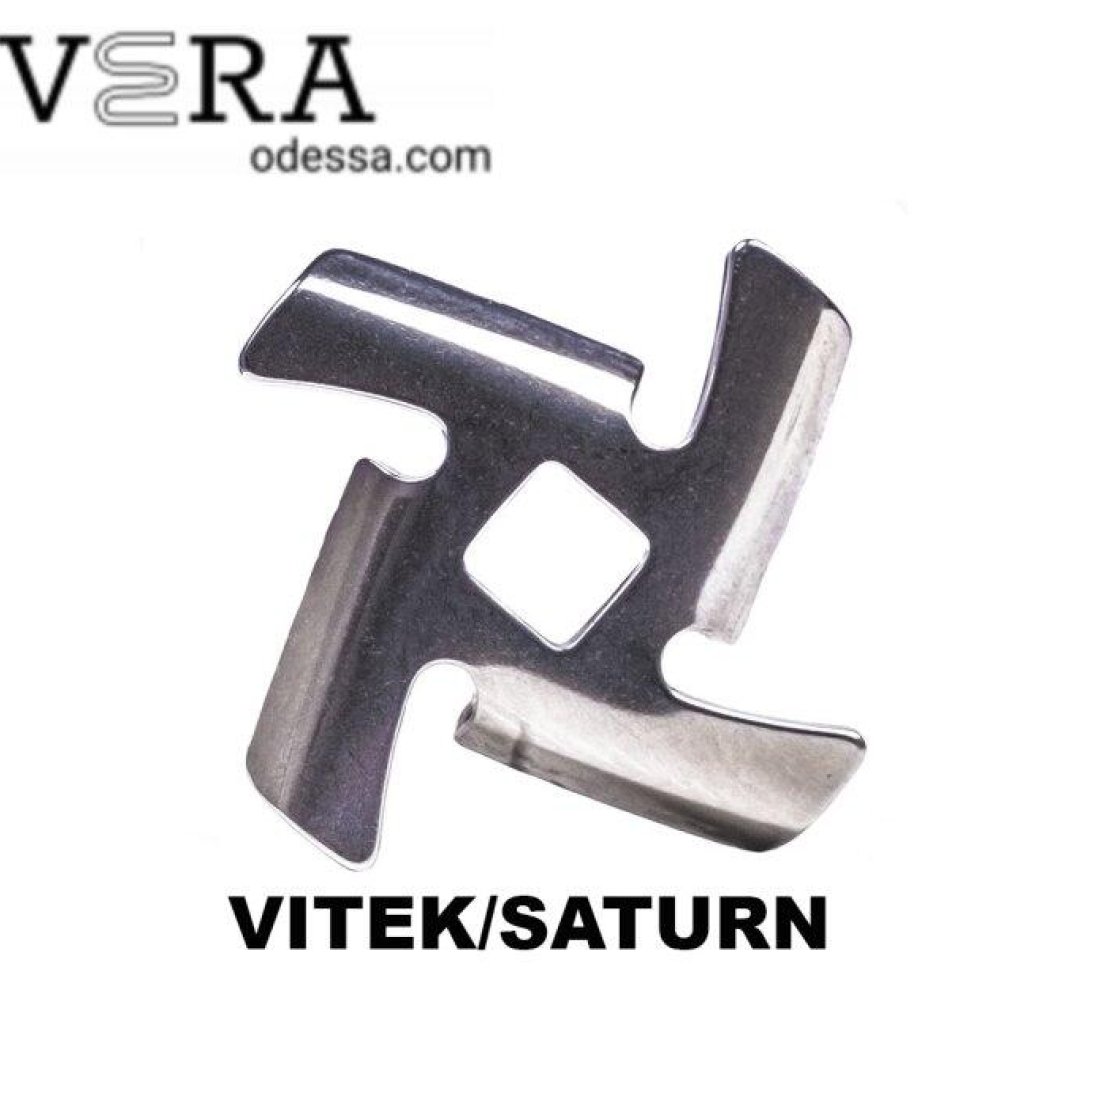 Купить ножи для мясорубок Vitek|Saturn оптом, фотография 2